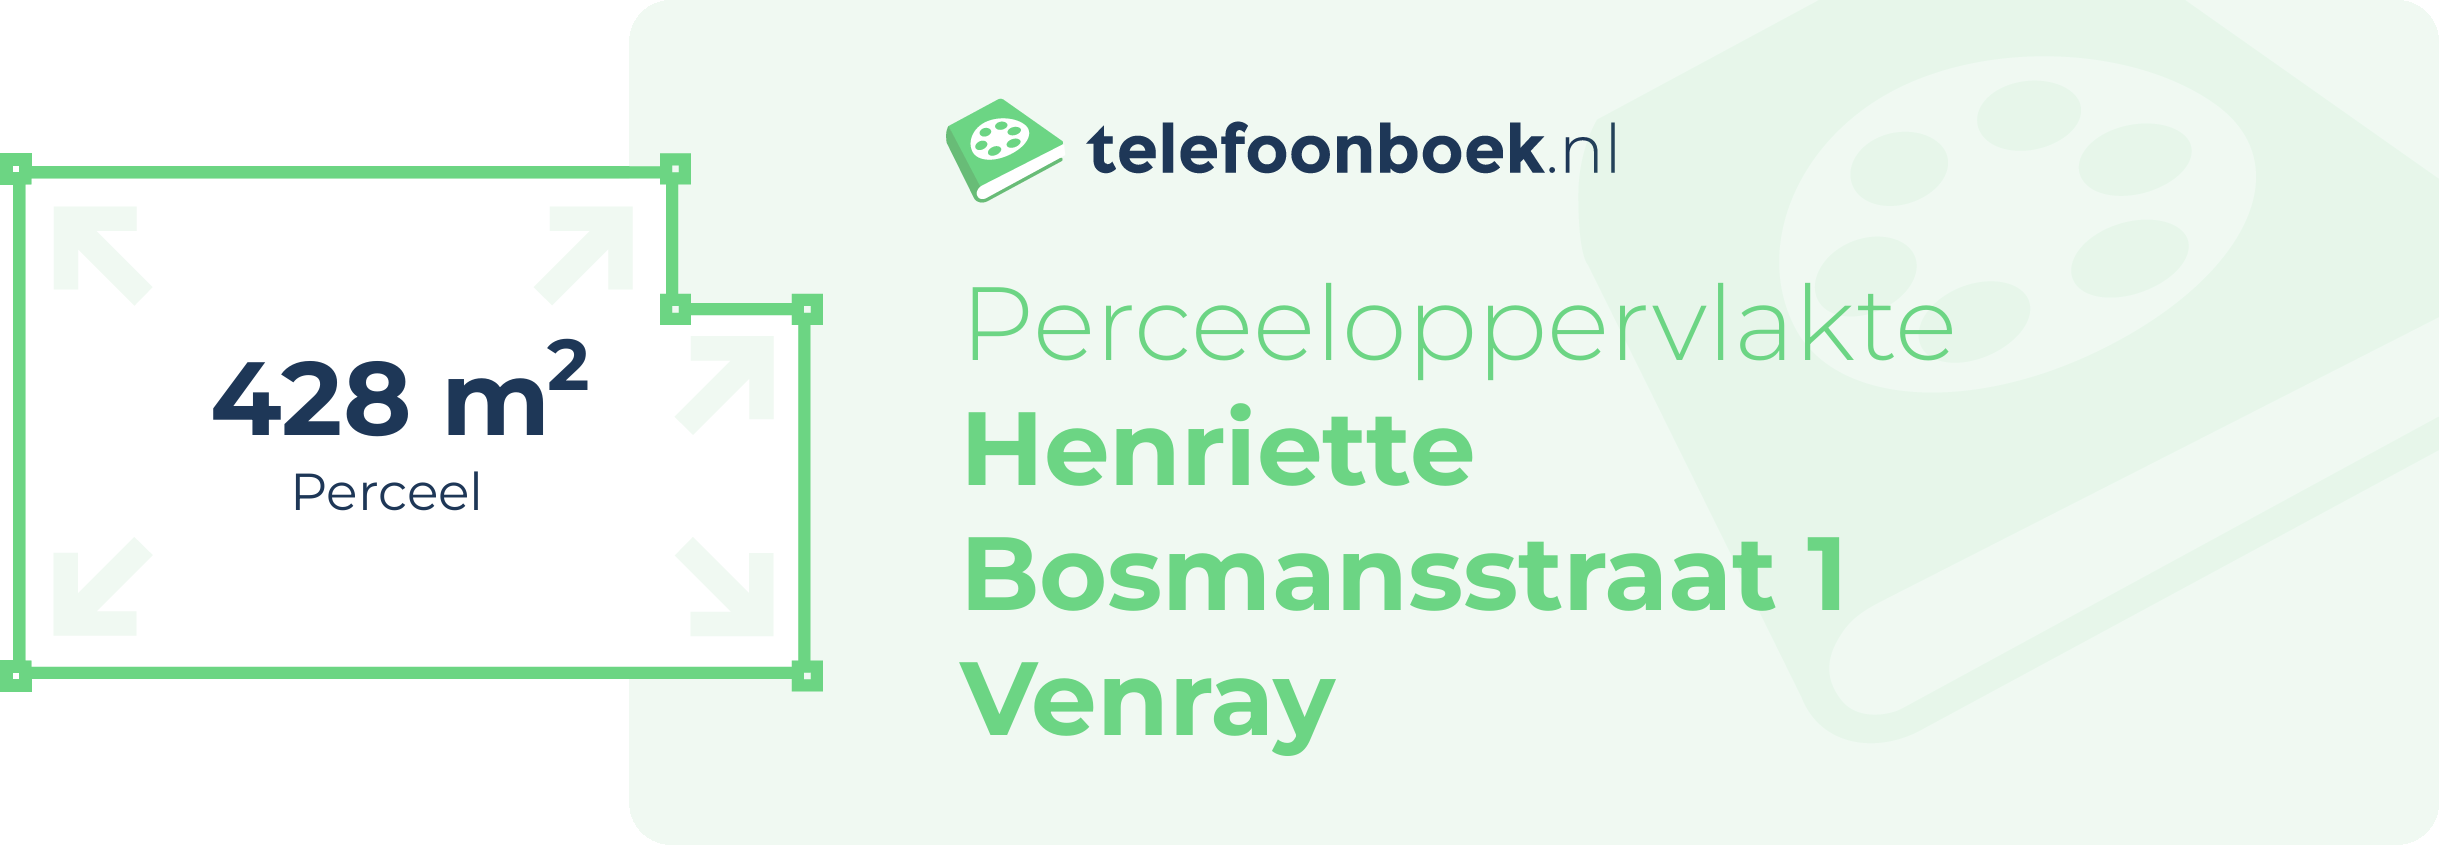 Perceeloppervlakte Henriette Bosmansstraat 1 Venray